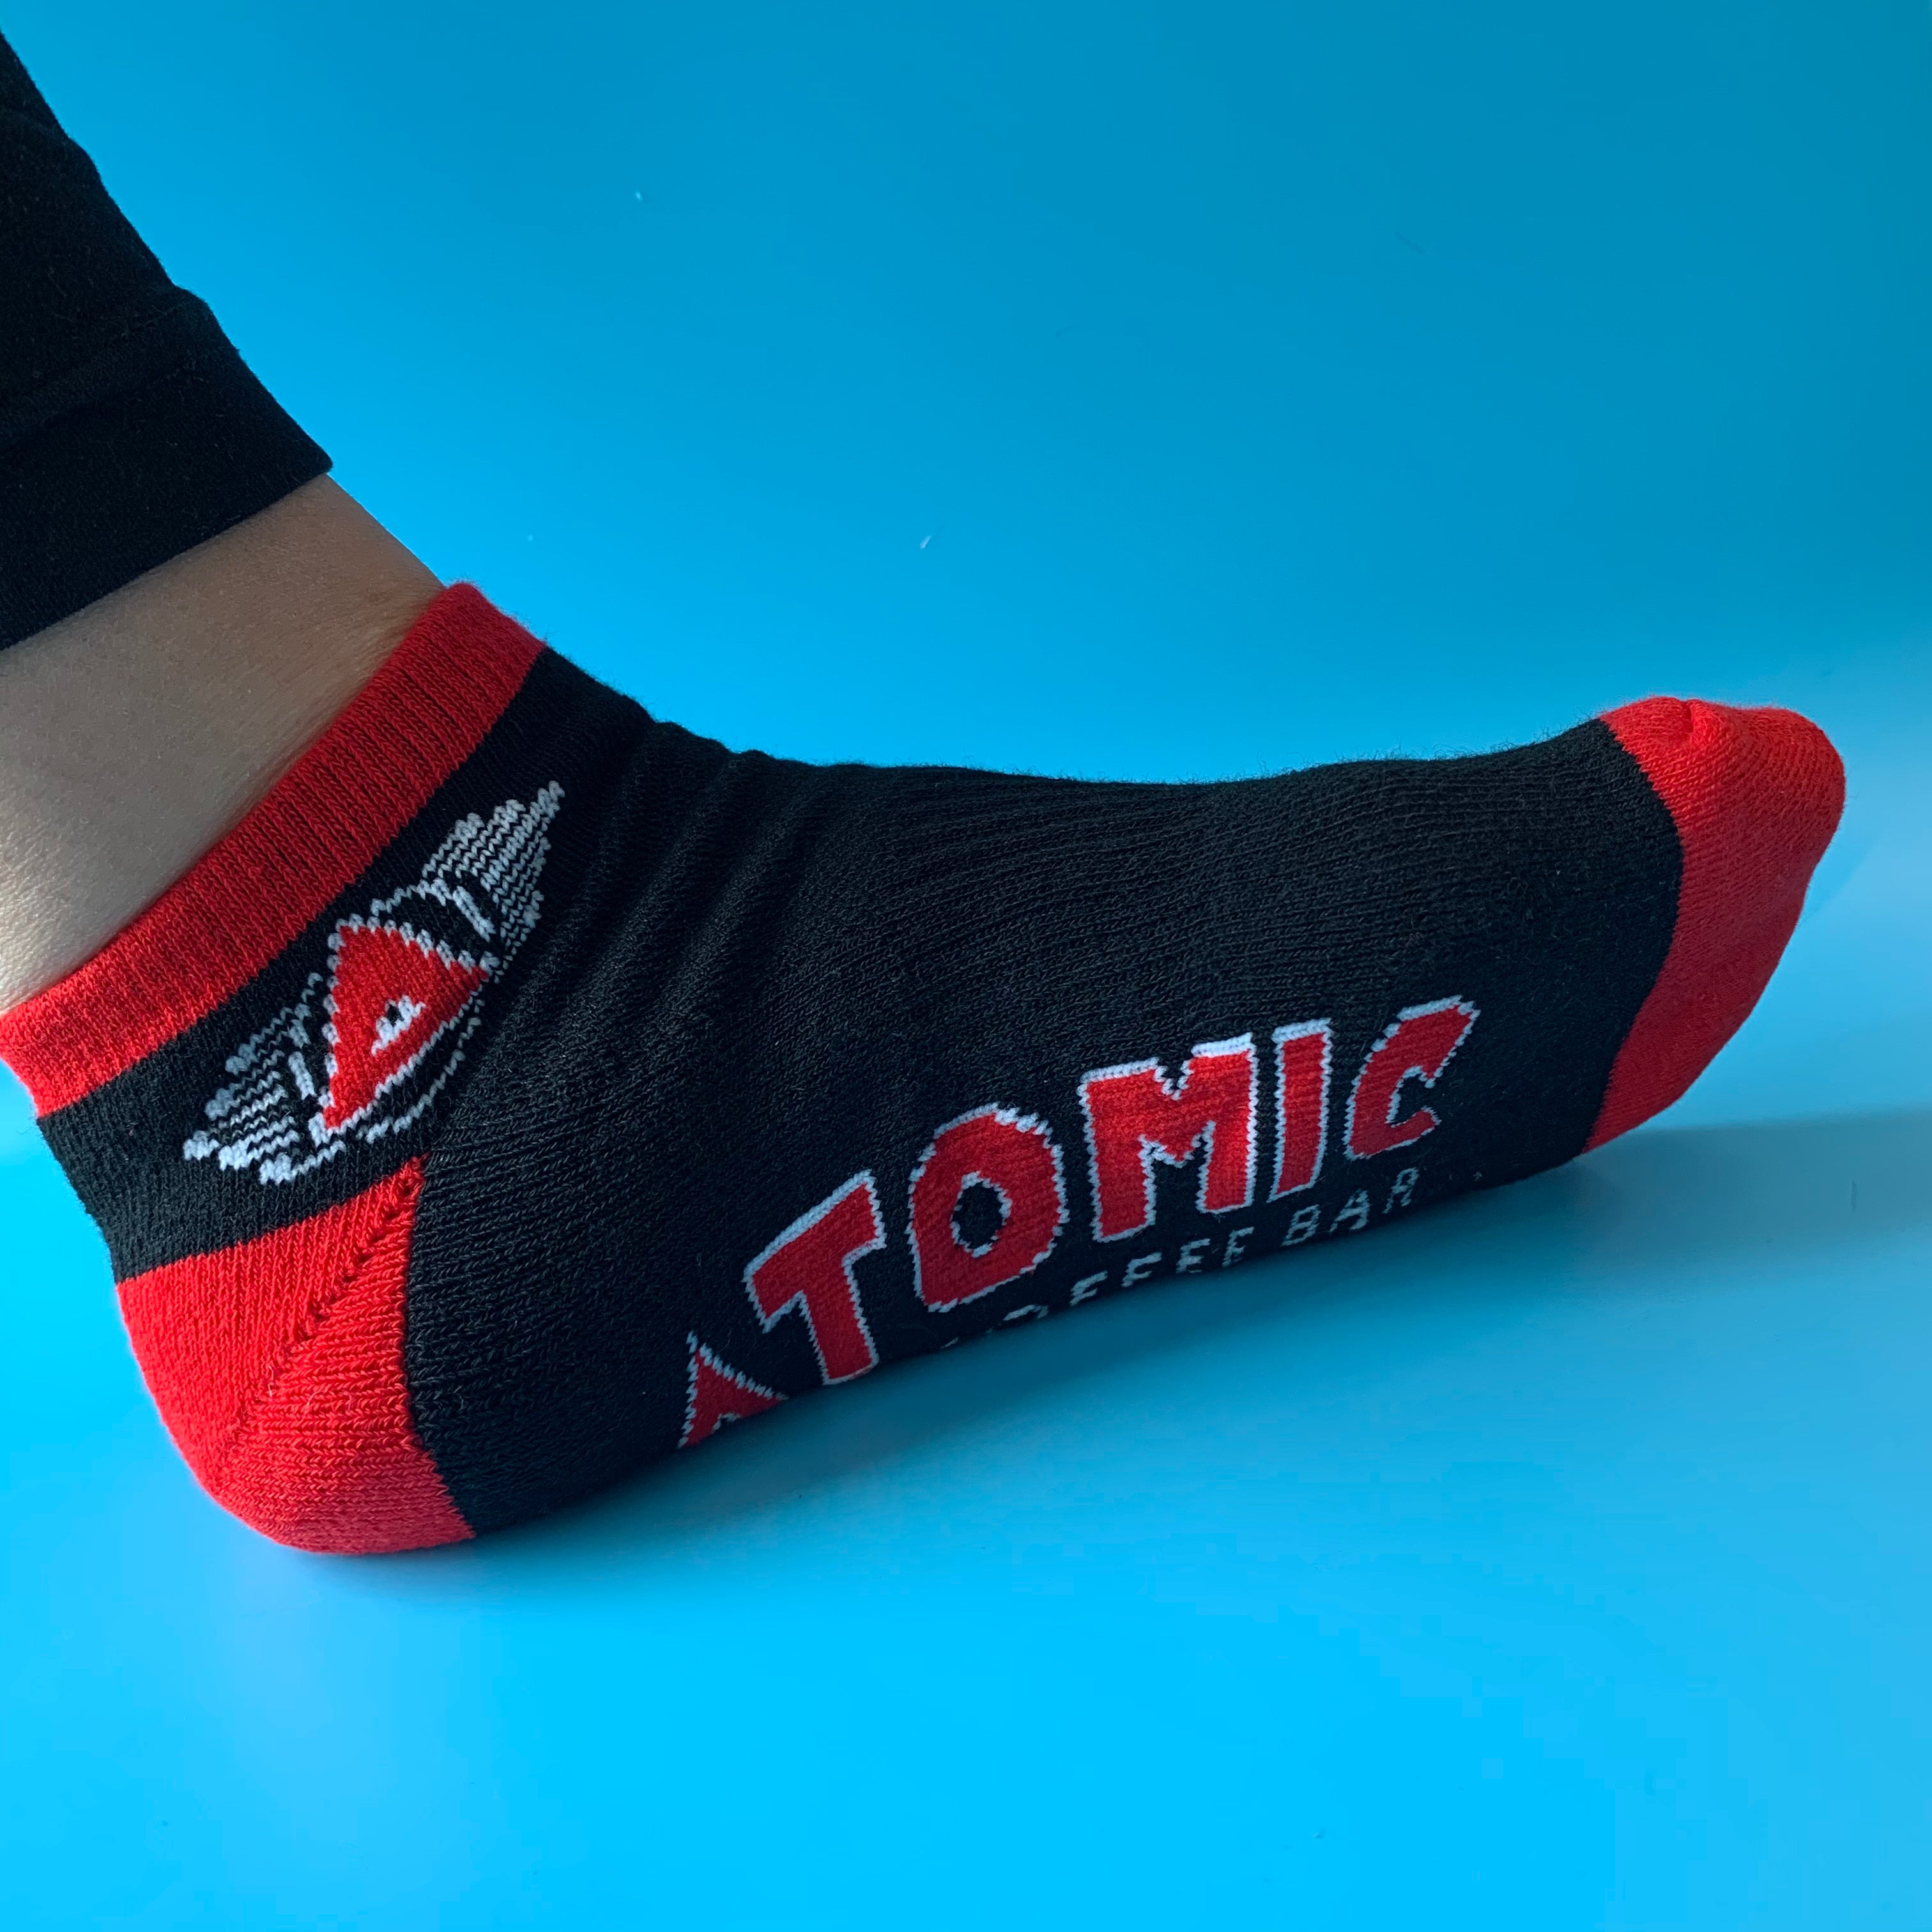 Atomic Socks